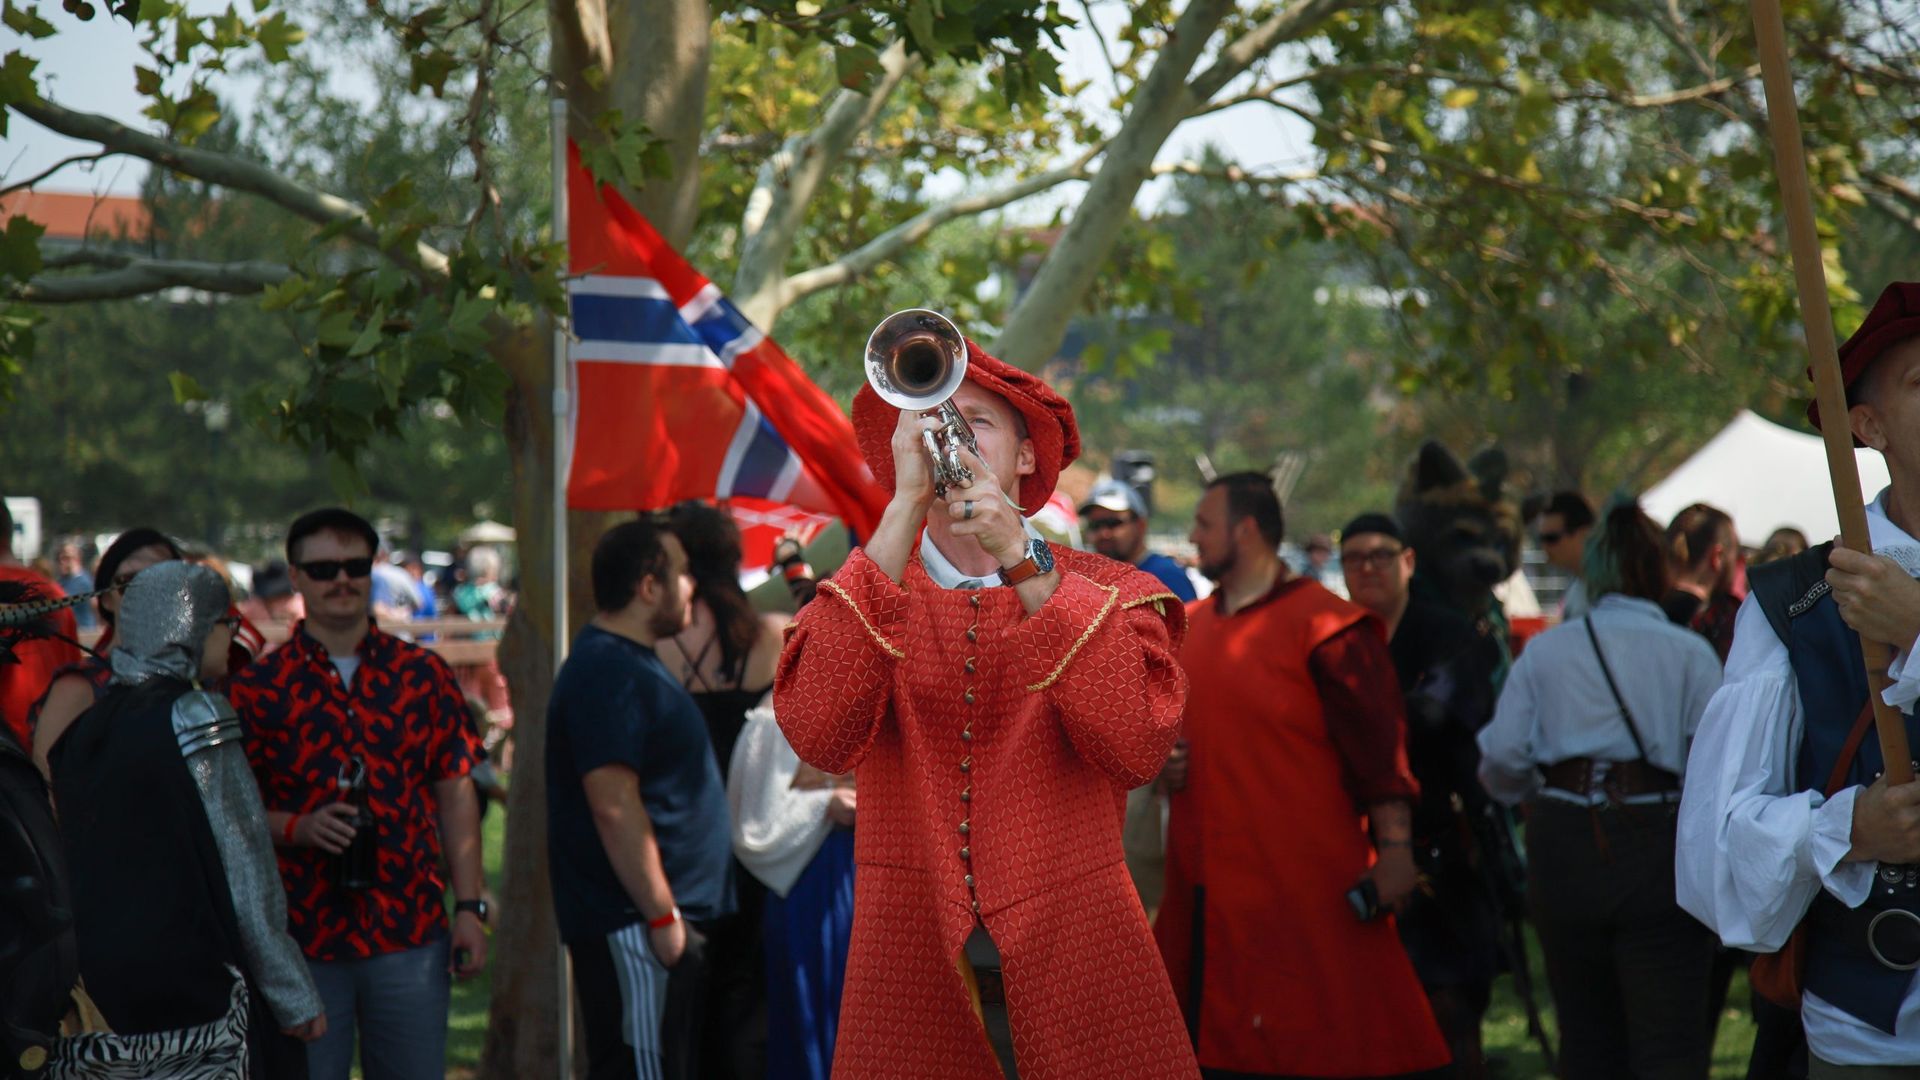 A herald sounds his trumpet at the Utah Renaissance Faire. Photo courtesy of the Utah Renaissance Faire.